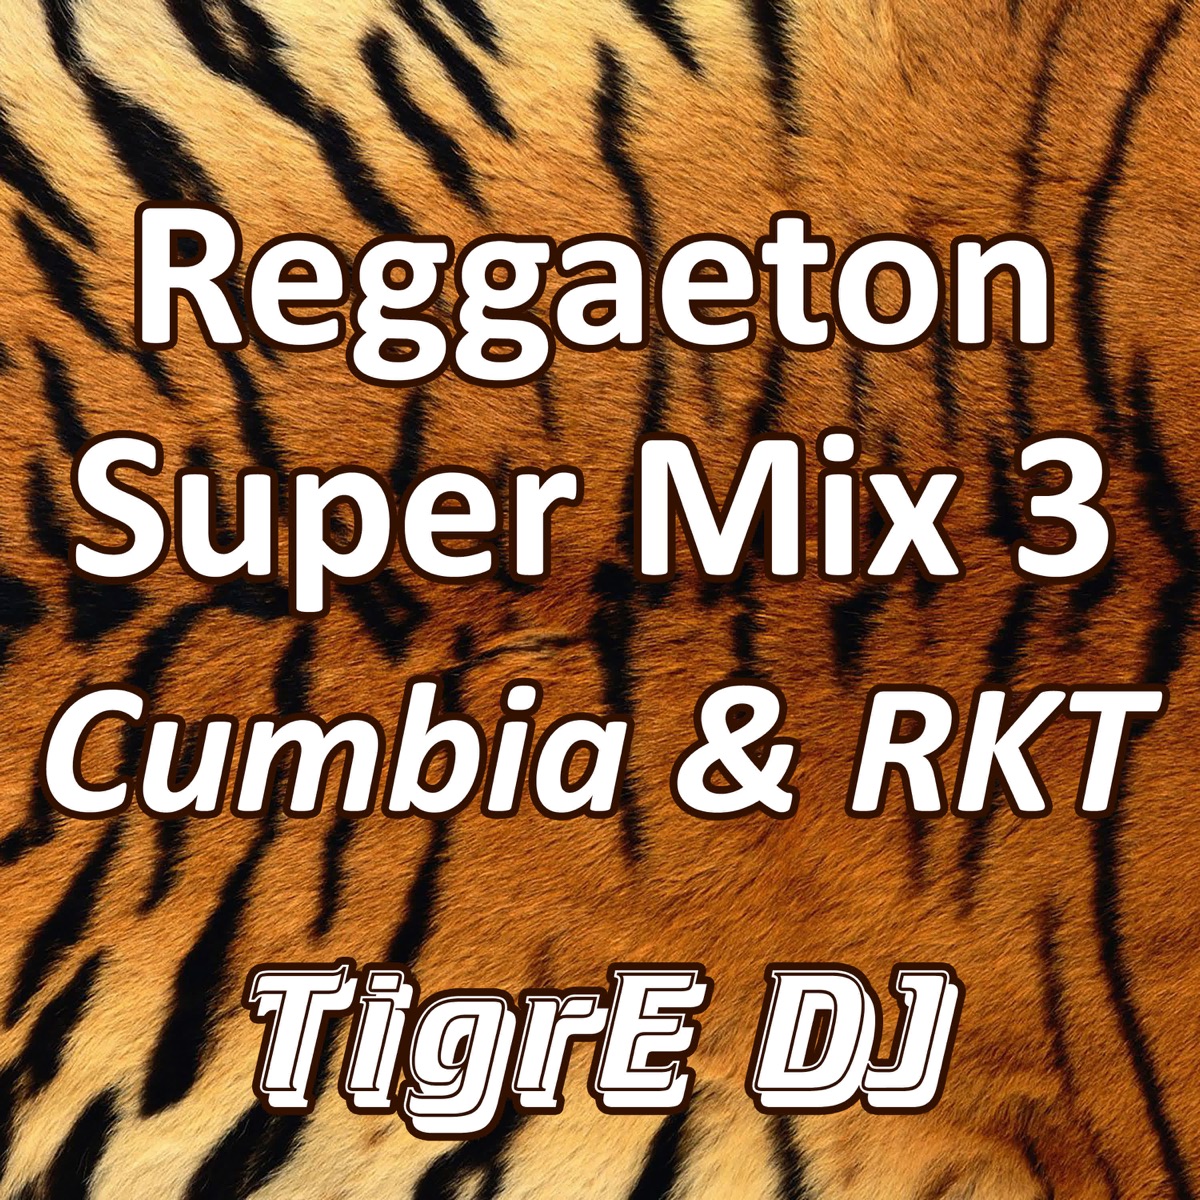 Reggaeton Super Mix 3 (Cumbia & RKT) - Album by TigrE DJ - Apple Music